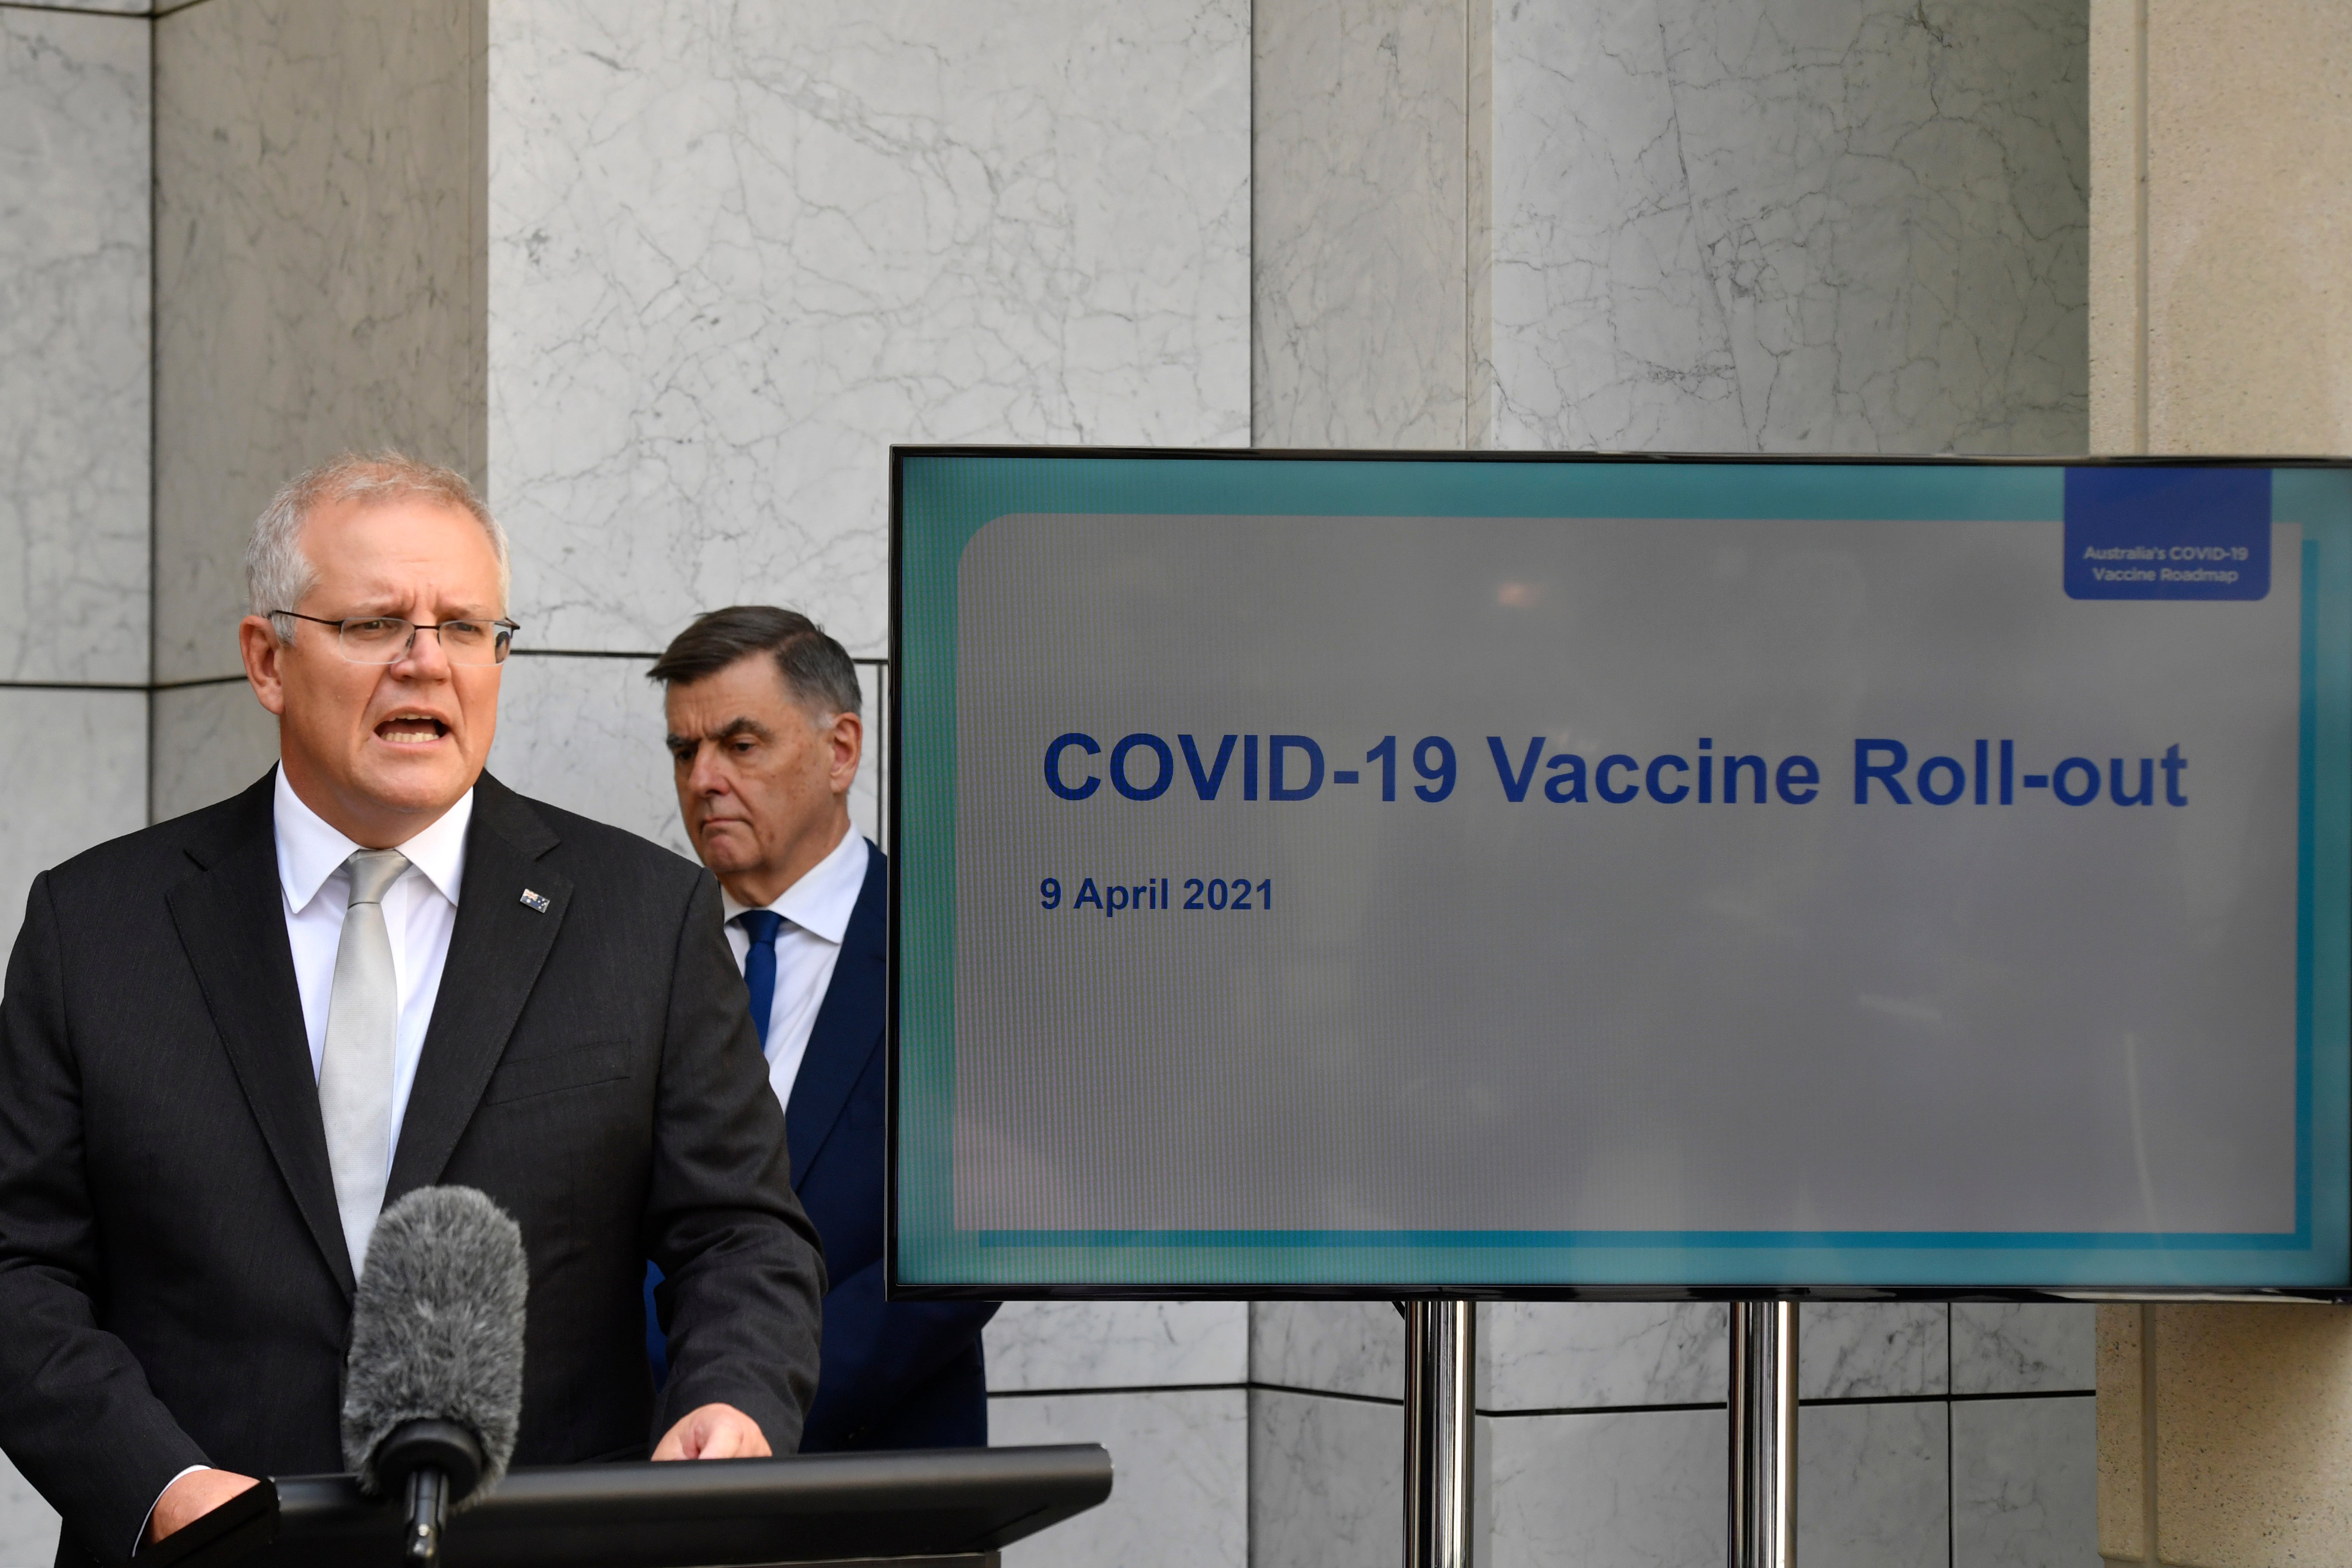 Virus Outbreak Australia Vaccine